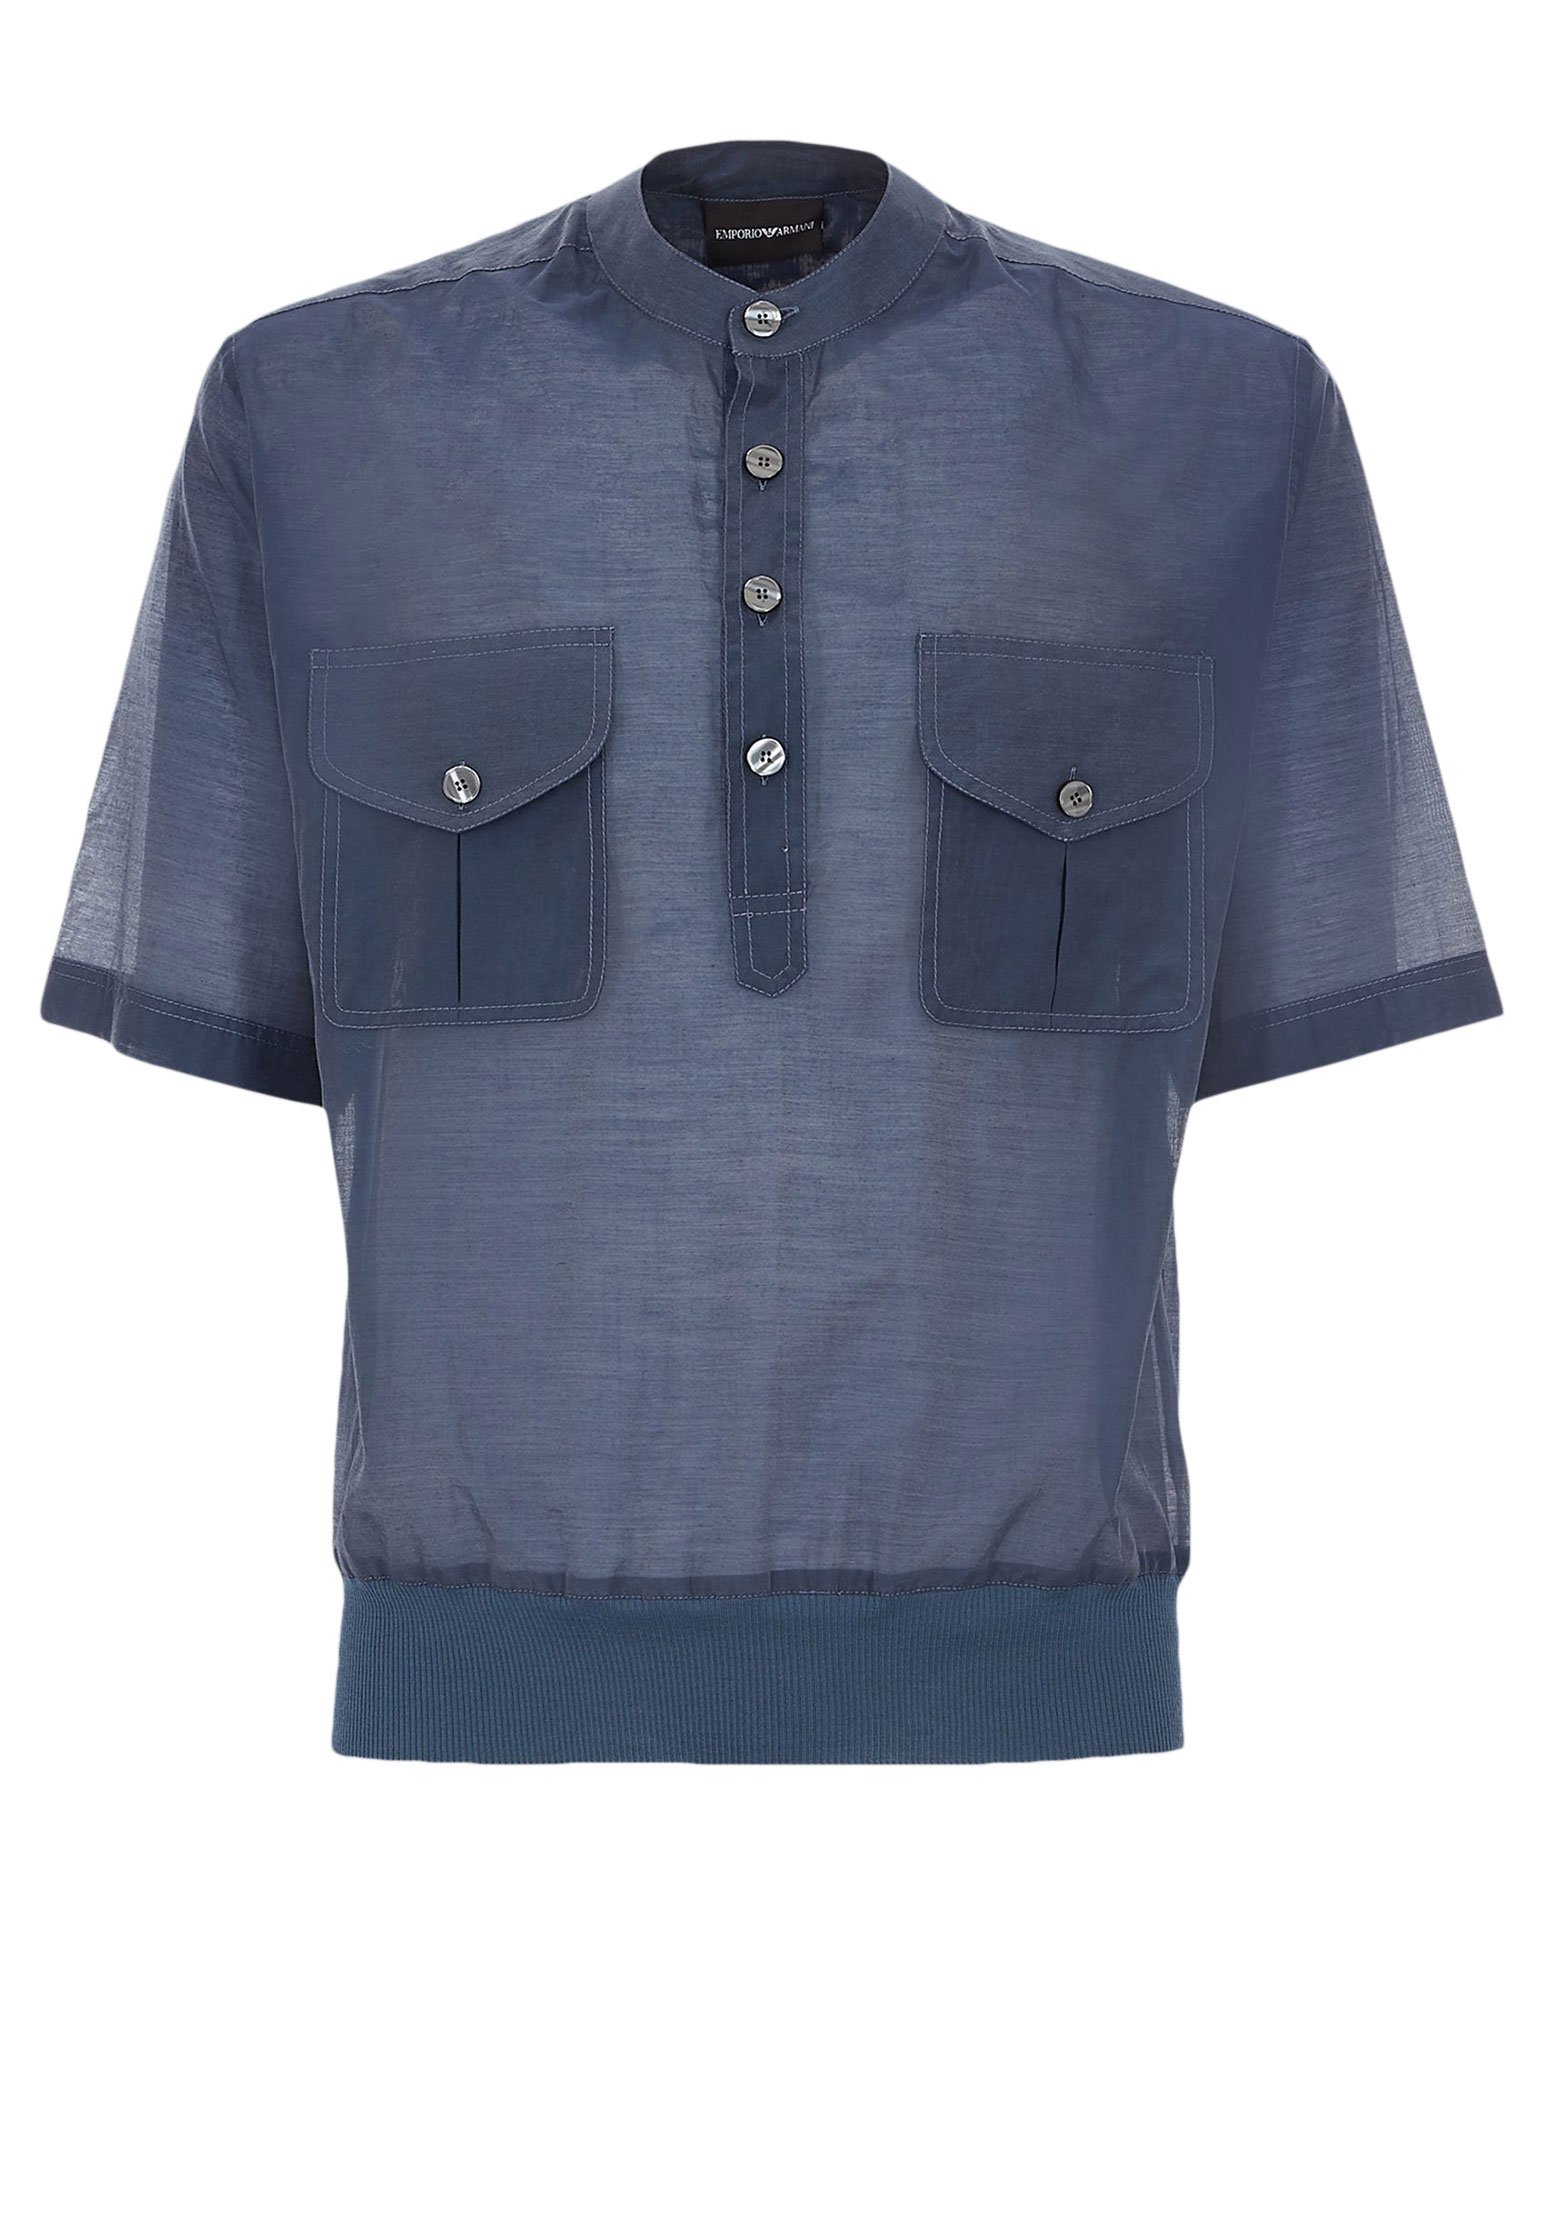 Рубашка мужская Emporio Armani 109330 синяя L